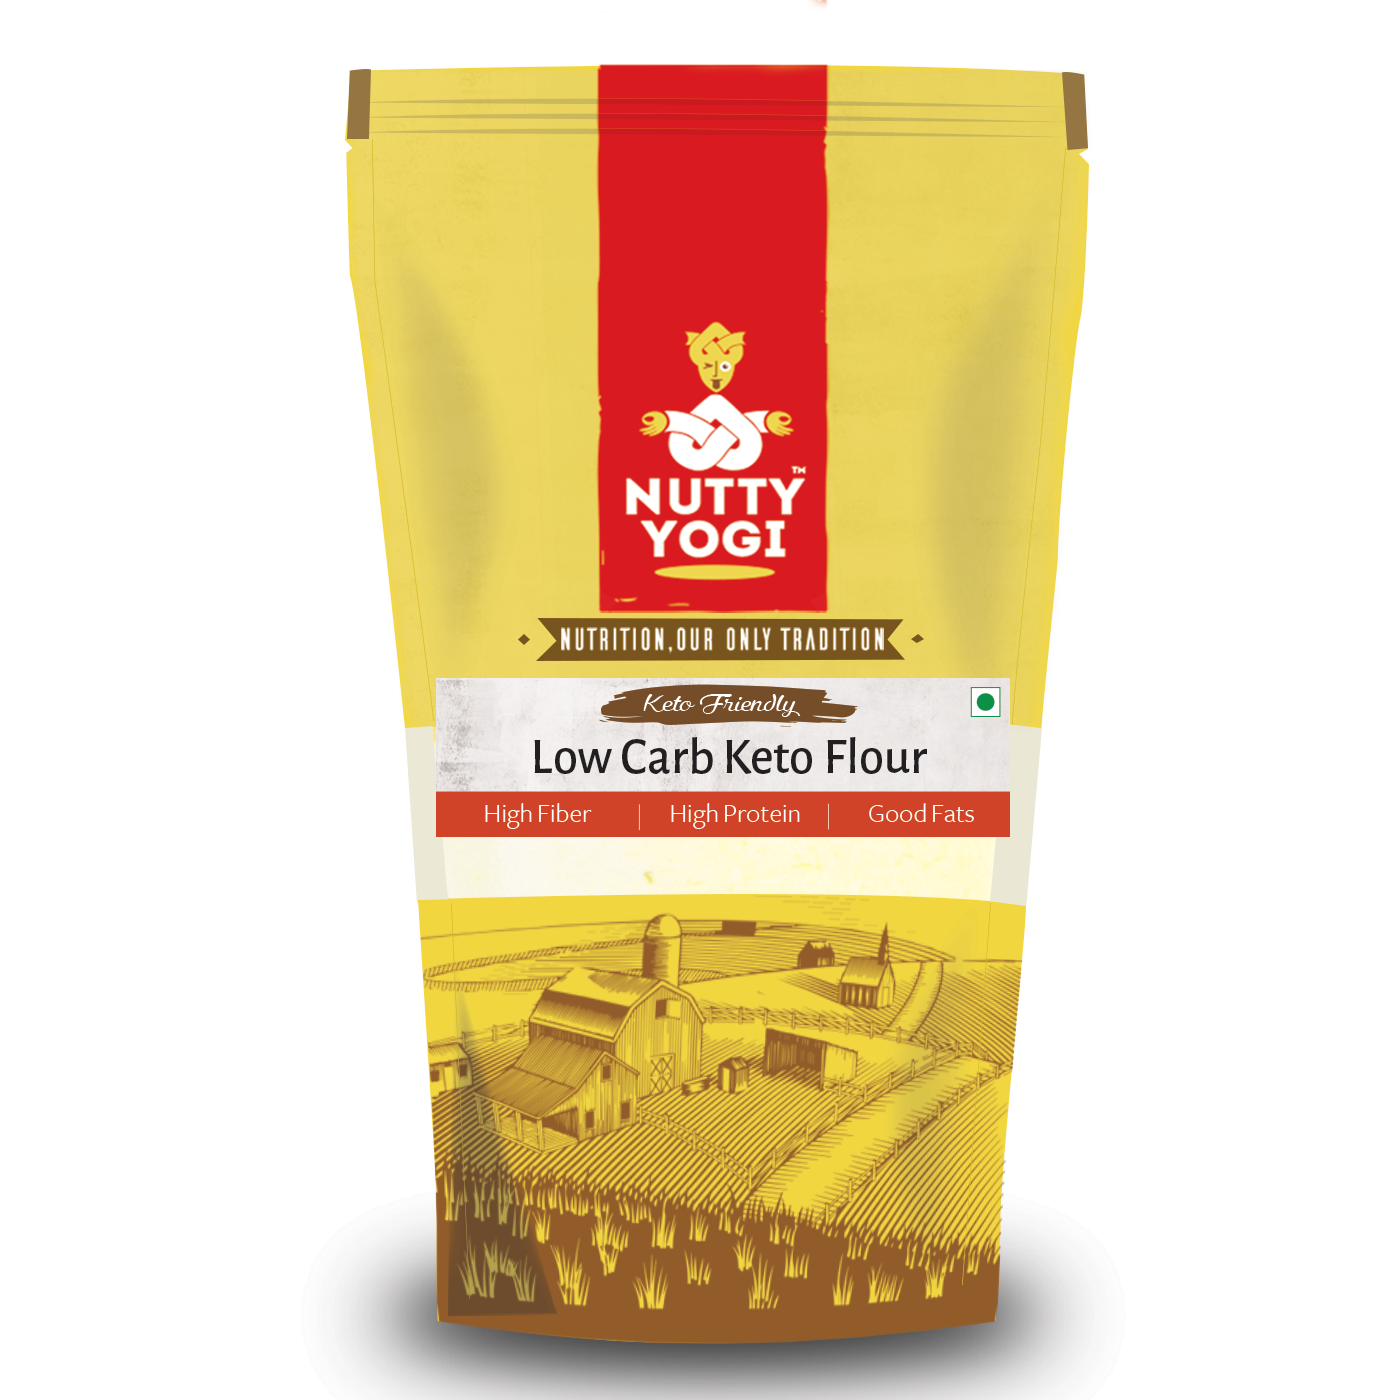 Nutty Yogi Low Carb Keto Flour 400g